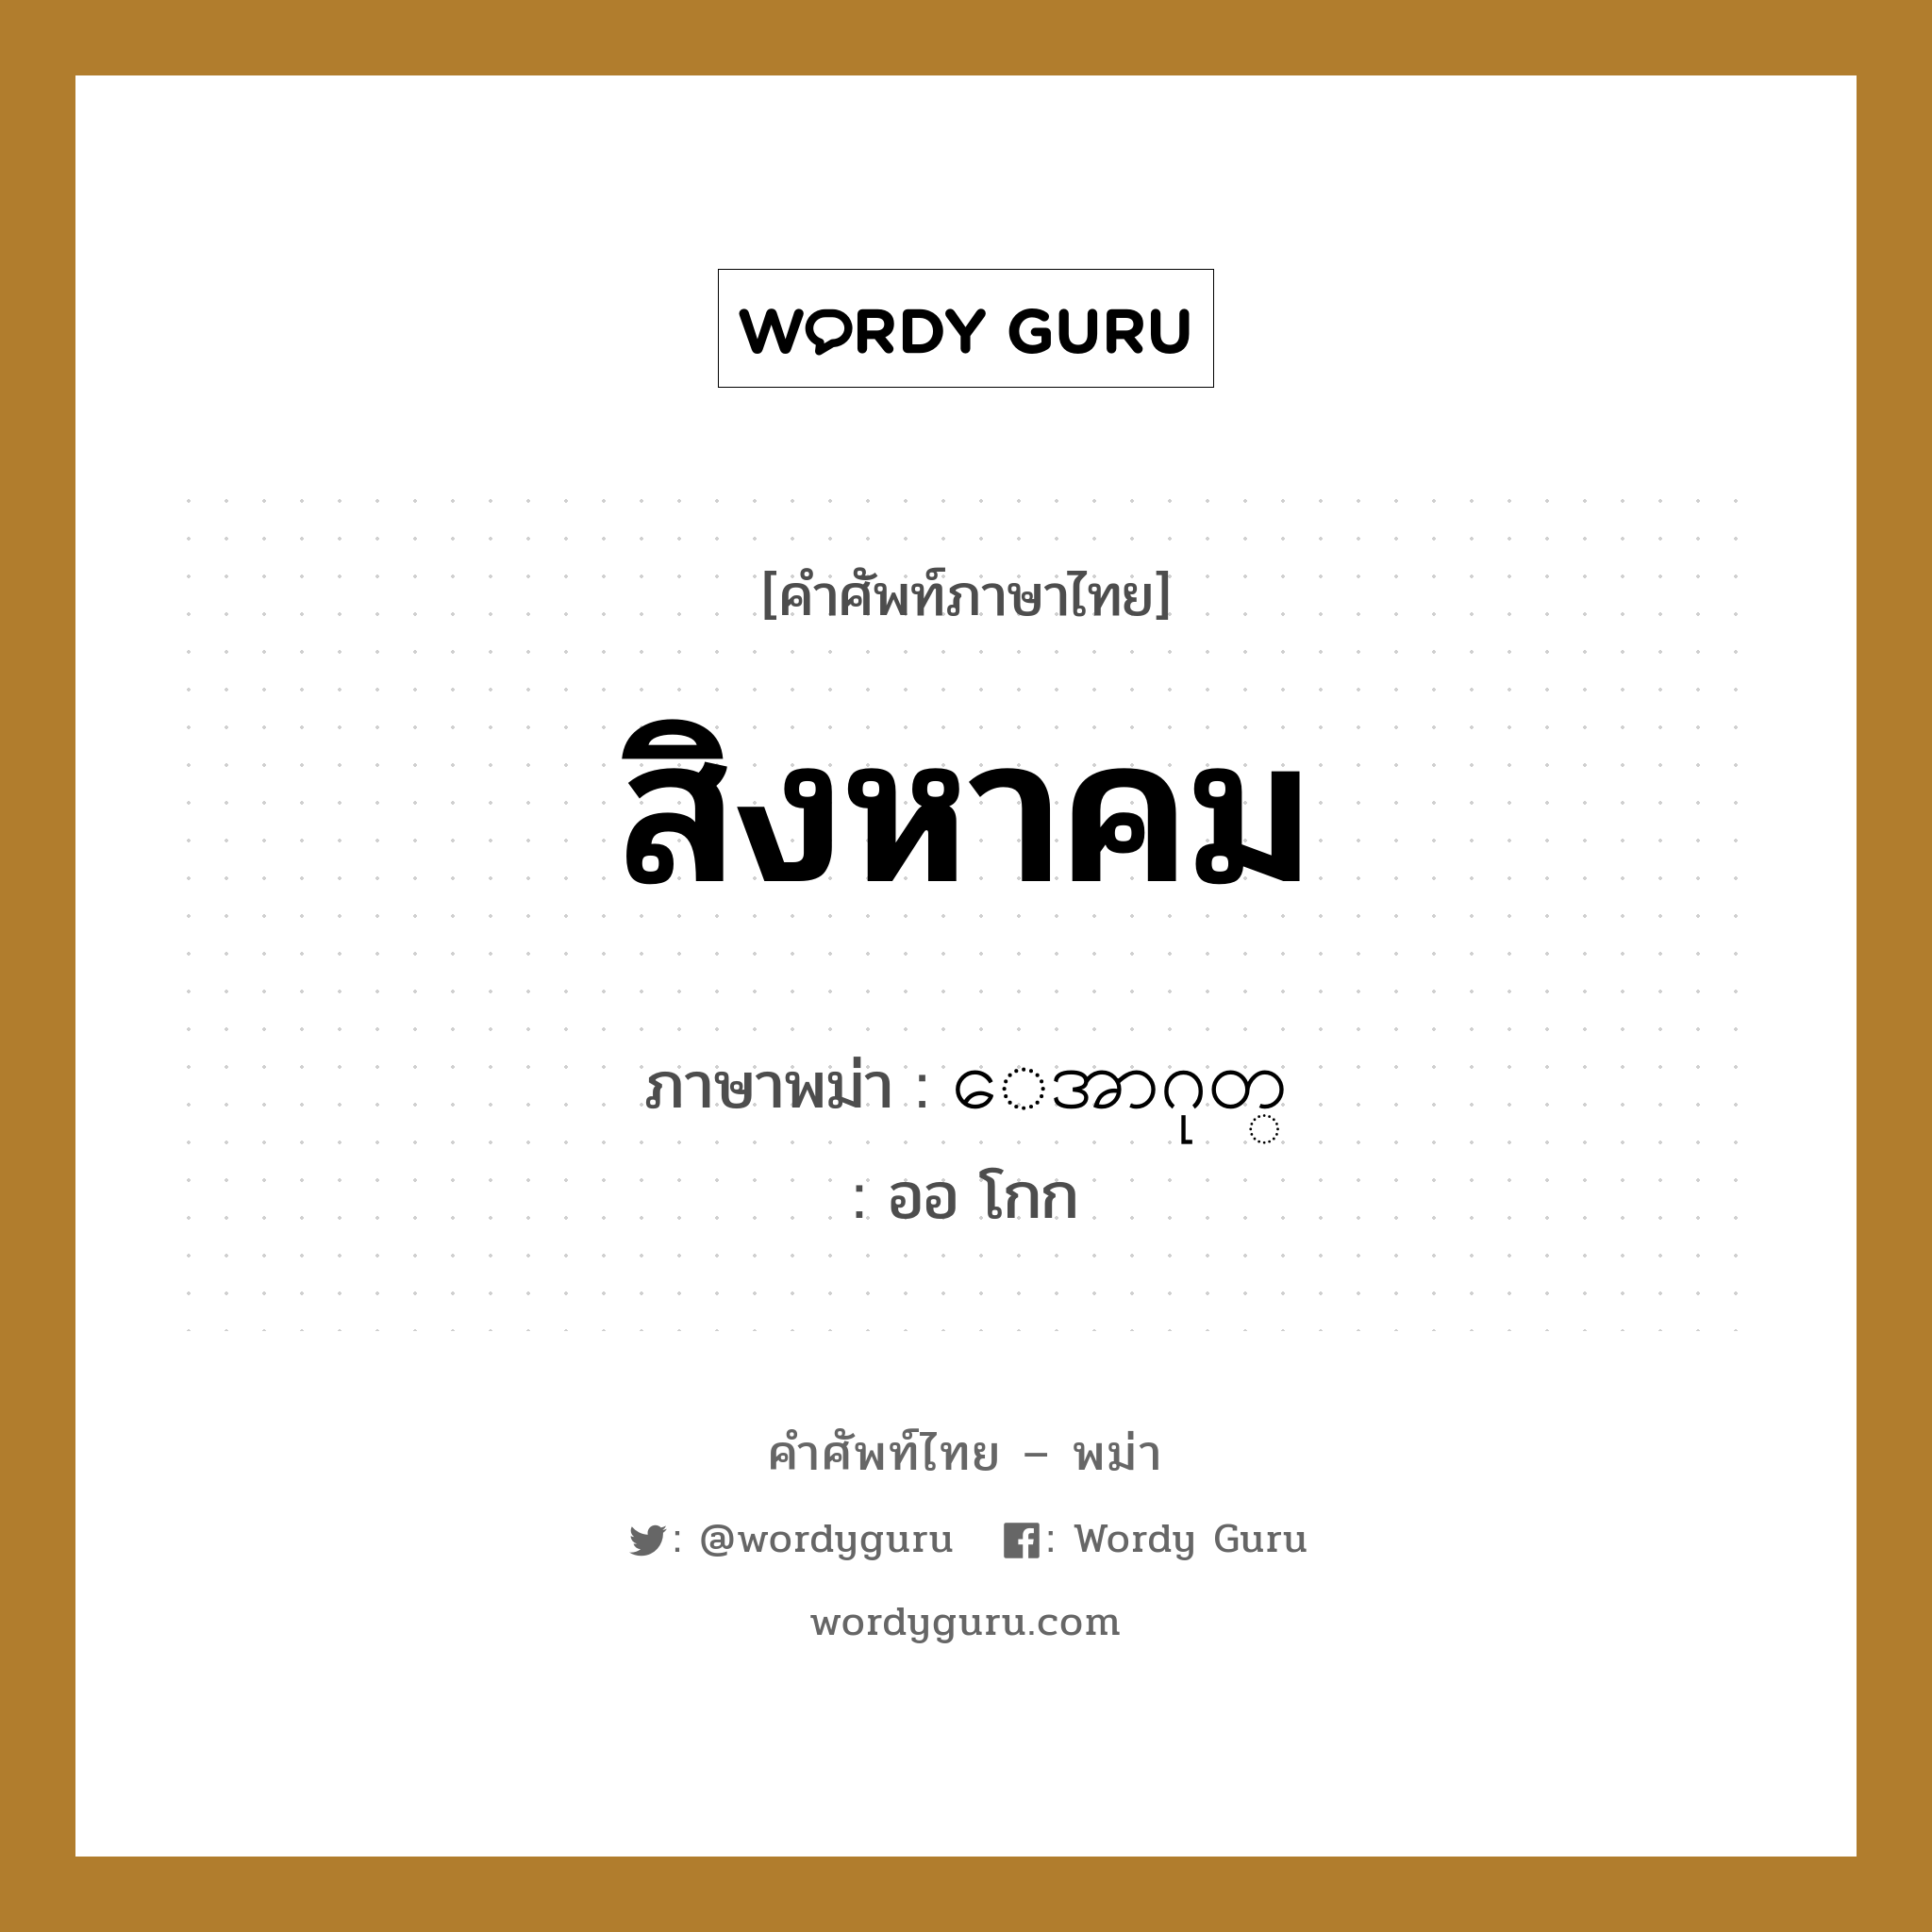 สิงหาคม ภาษาพม่าคืออะไร, คำศัพท์ภาษาไทย - พม่า สิงหาคม ภาษาพม่า ေအာဂုတ္ หมวด หมวดวัน เดือน ปี ออ โกก หมวด หมวดวัน เดือน ปี